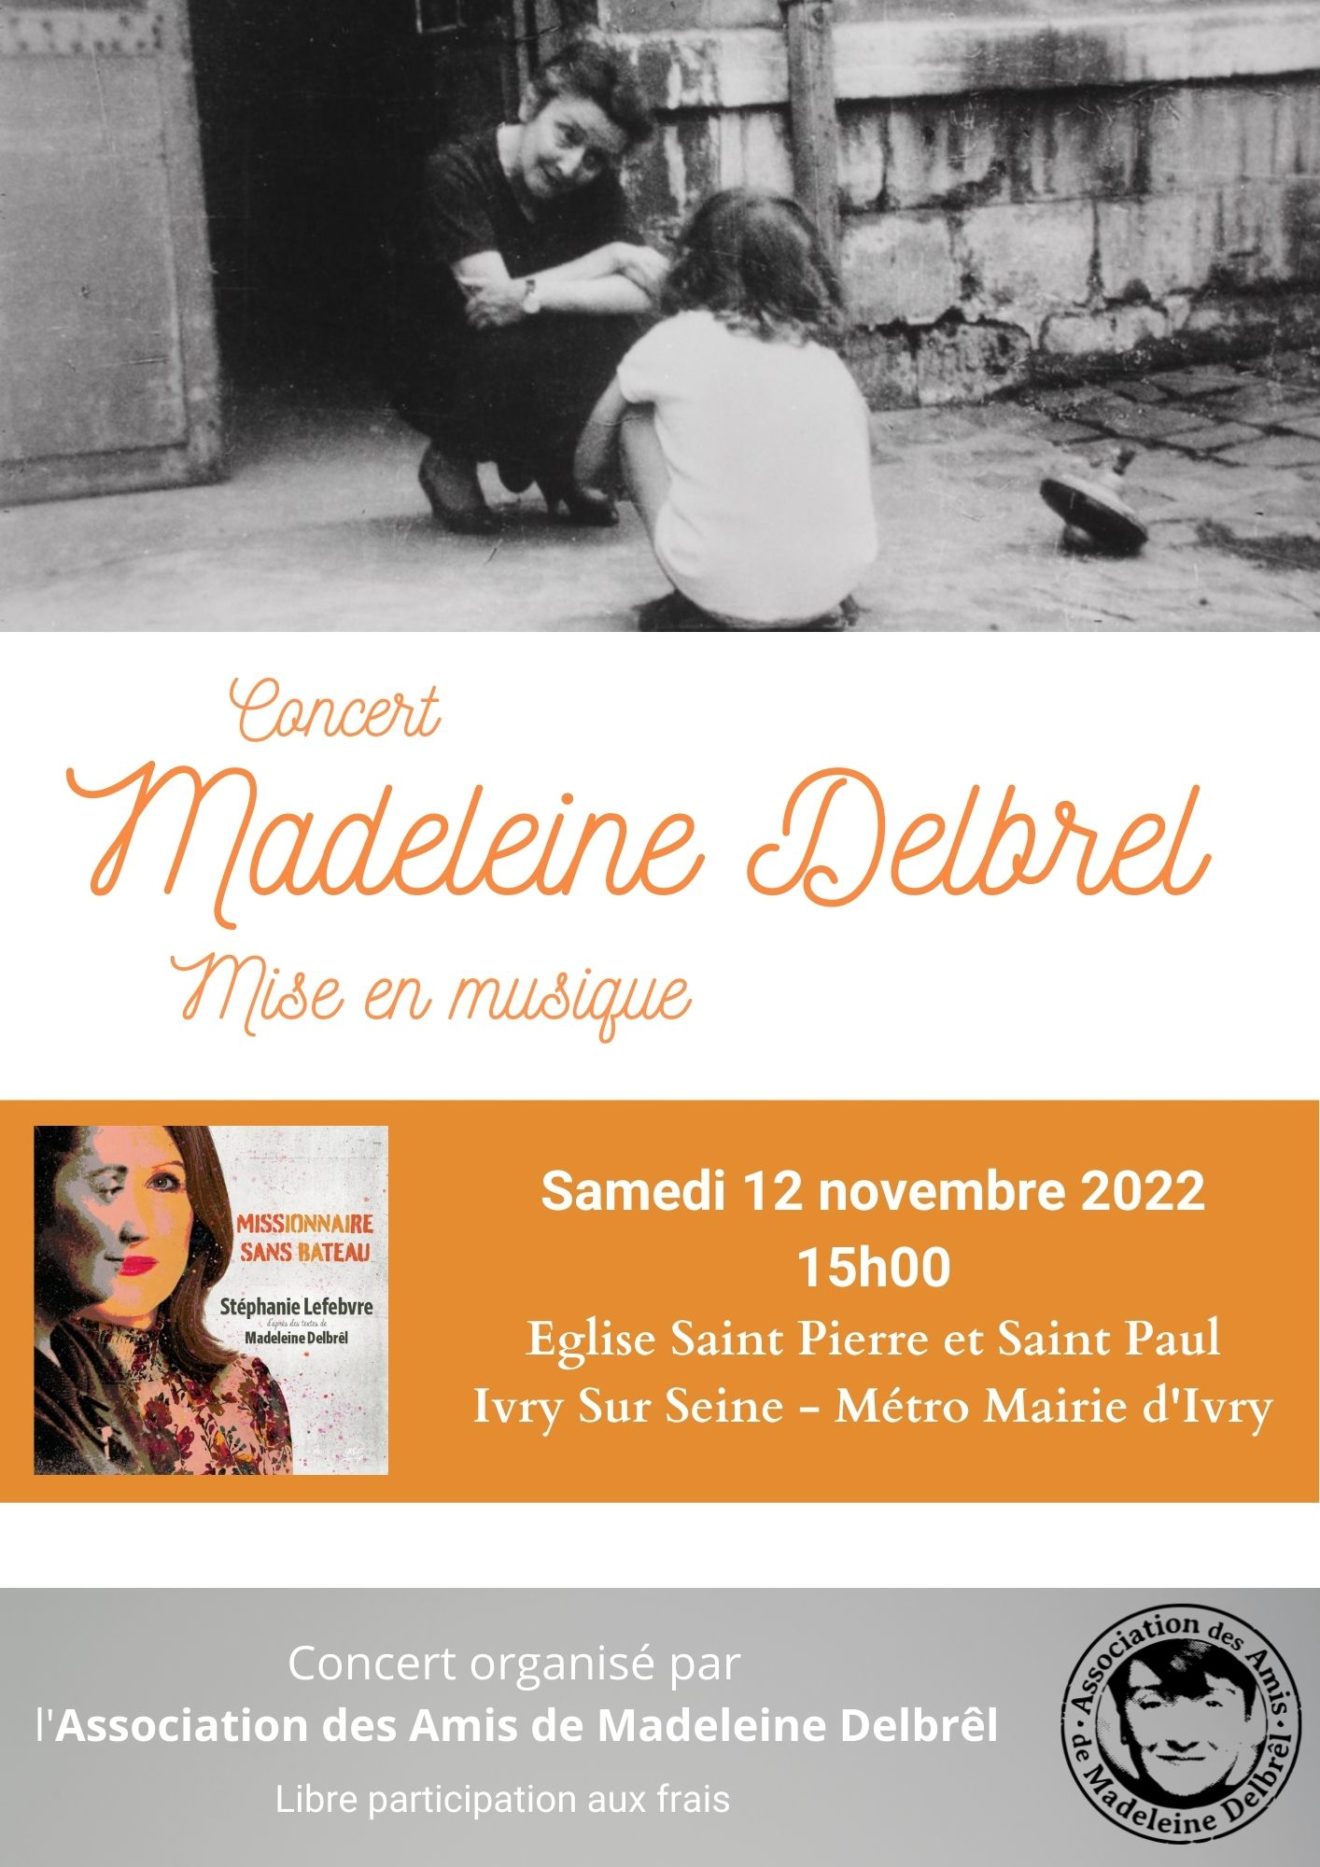 Concert Madeleine Delbrêl mise en musique 12 novembre à 15h